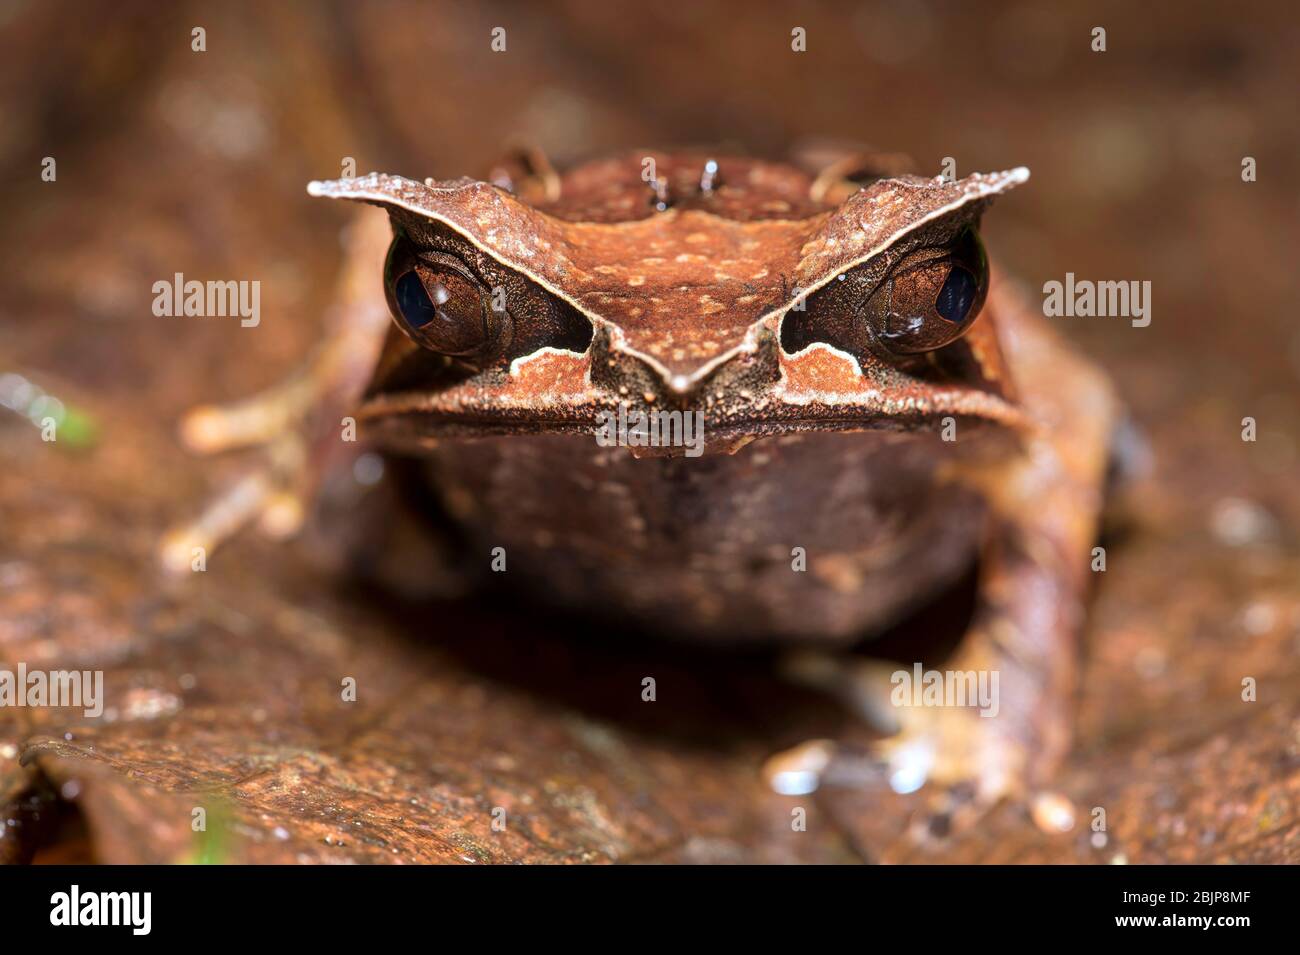 Grenouille à bec long (Mesophrys nasuta), famille des grenouilles à litière (Mesophryidae), parc national de Kubah, Kuching, Sarawak, Bornéo, Malaisie Banque D'Images